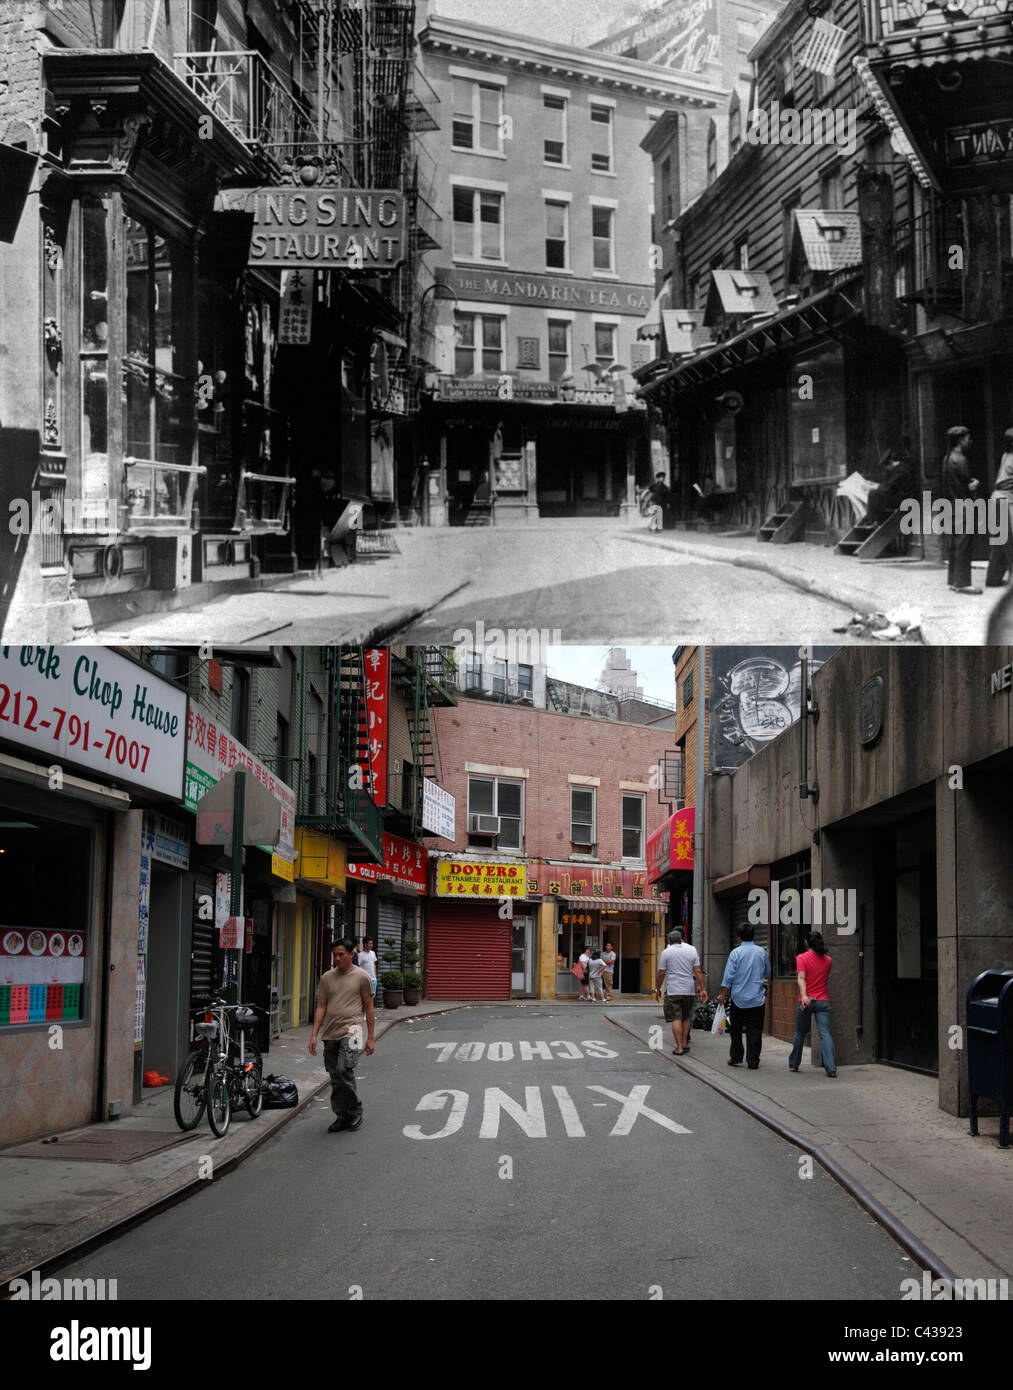 Doyers Street, Chinatown, ieri e oggi - Foto in alto circa 1900, immagine inferiore Maggio 2011 Foto Stock